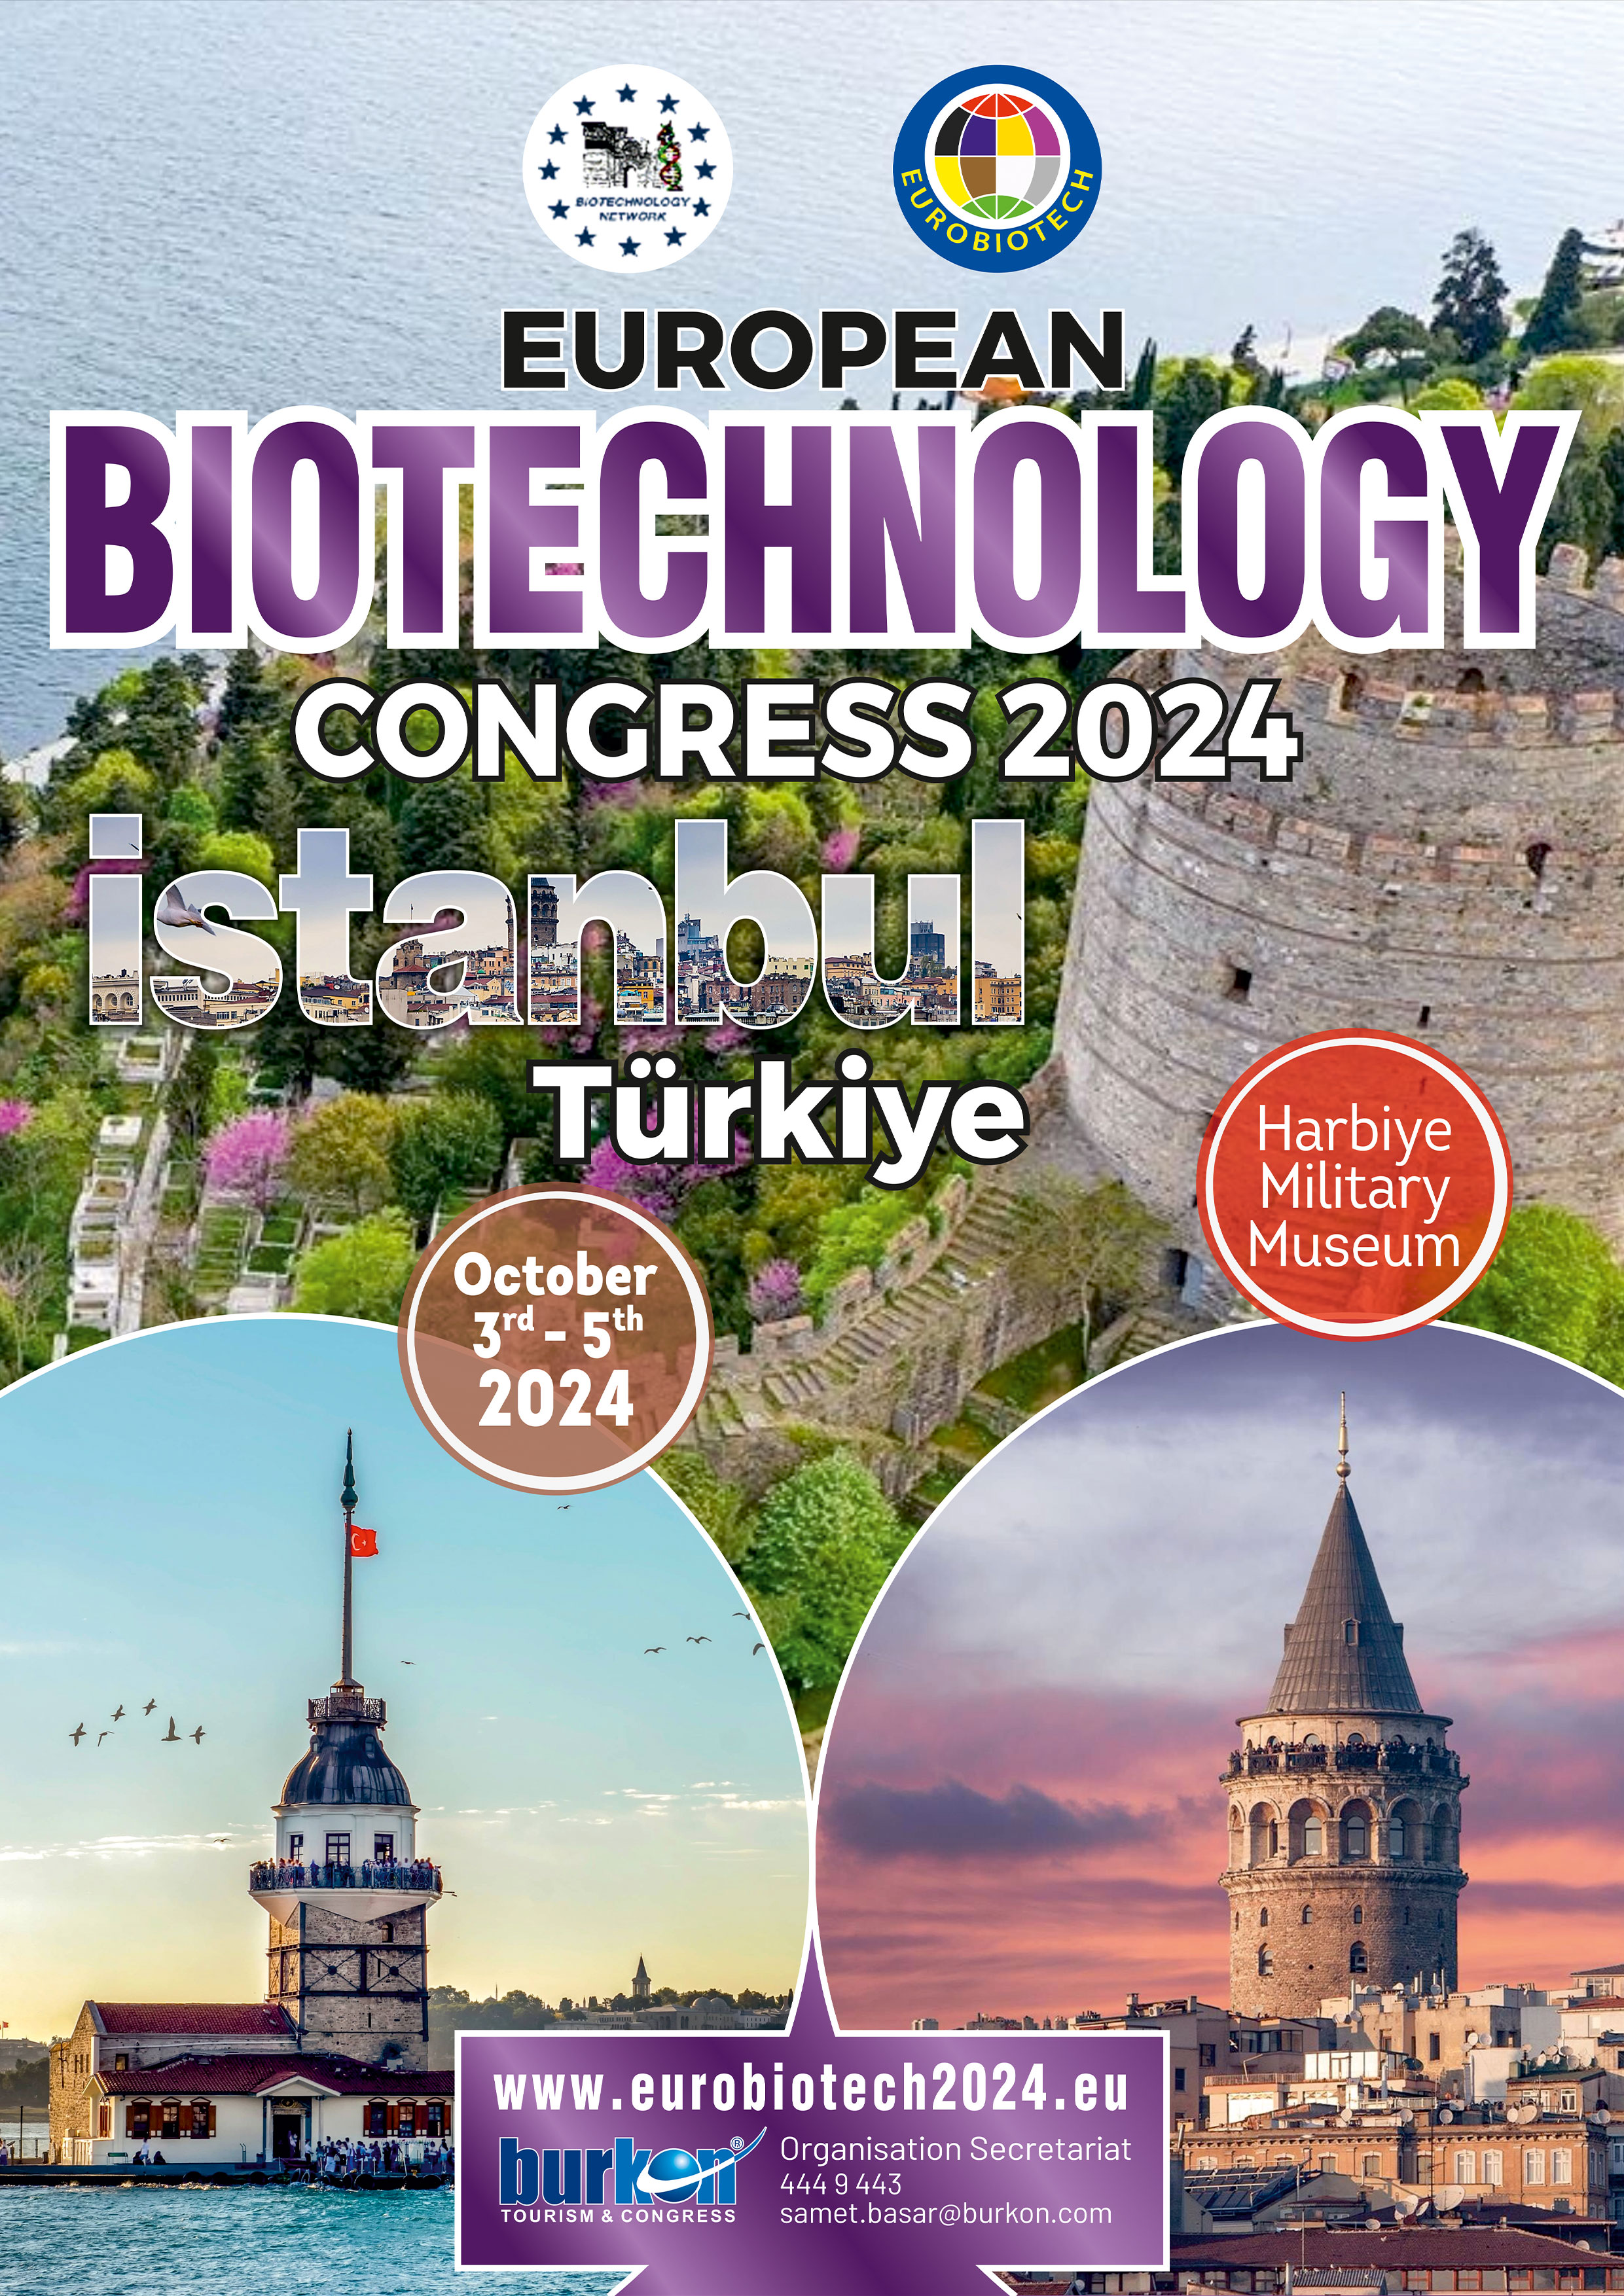 European Biotechnology Congress 2024